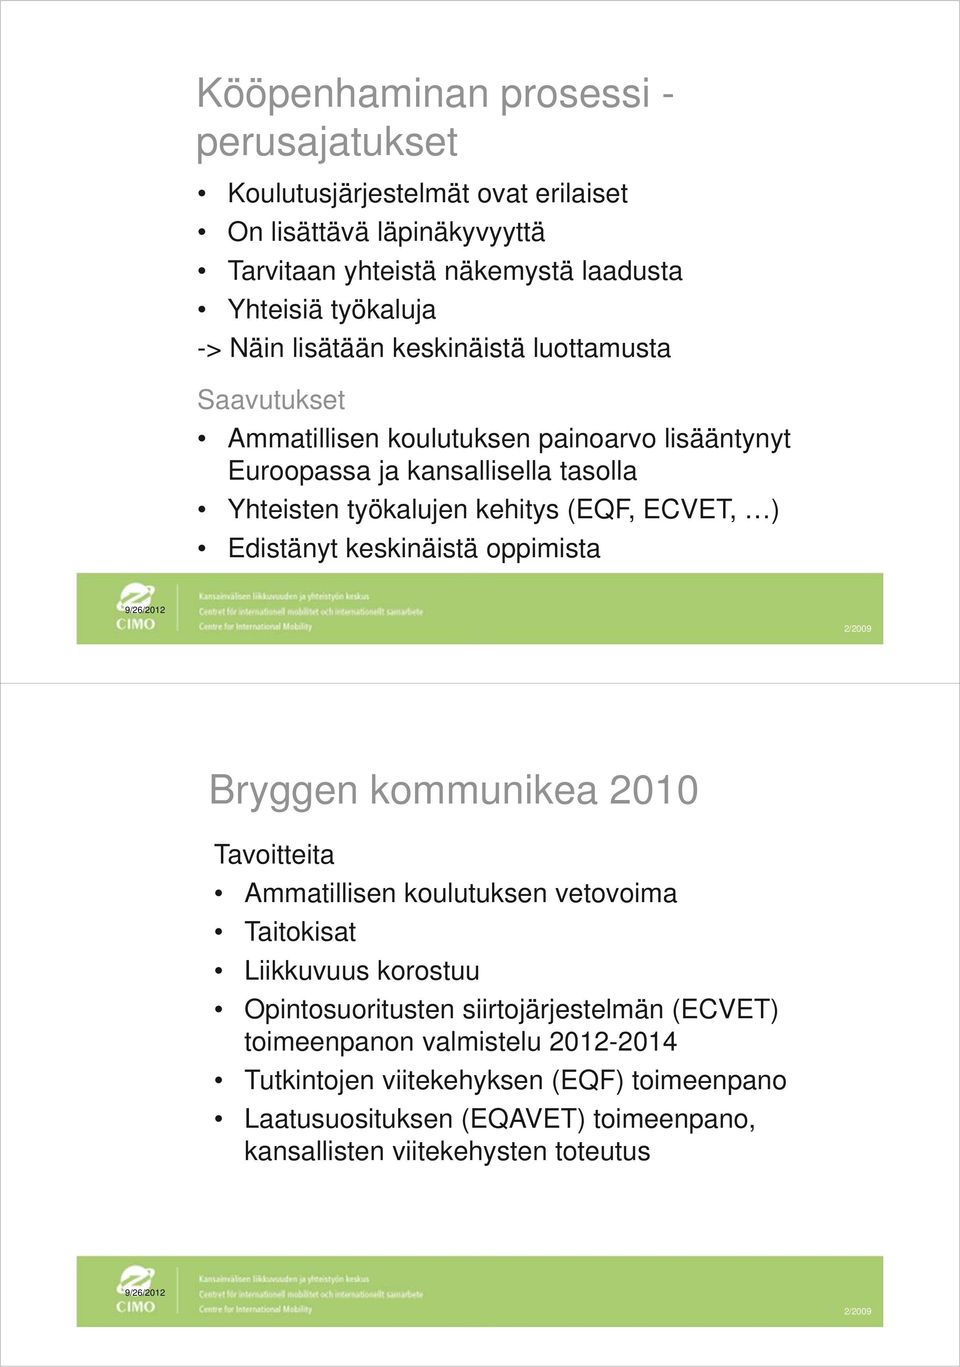 Edistänyt keskinäistä oppimista 9/26/2012 Bryggen kommunikea 2010 Tavoitteita Ammatillisen koulutuksen vetovoima Taitokisat Liikkuvuus korostuu Opintosuoritusten